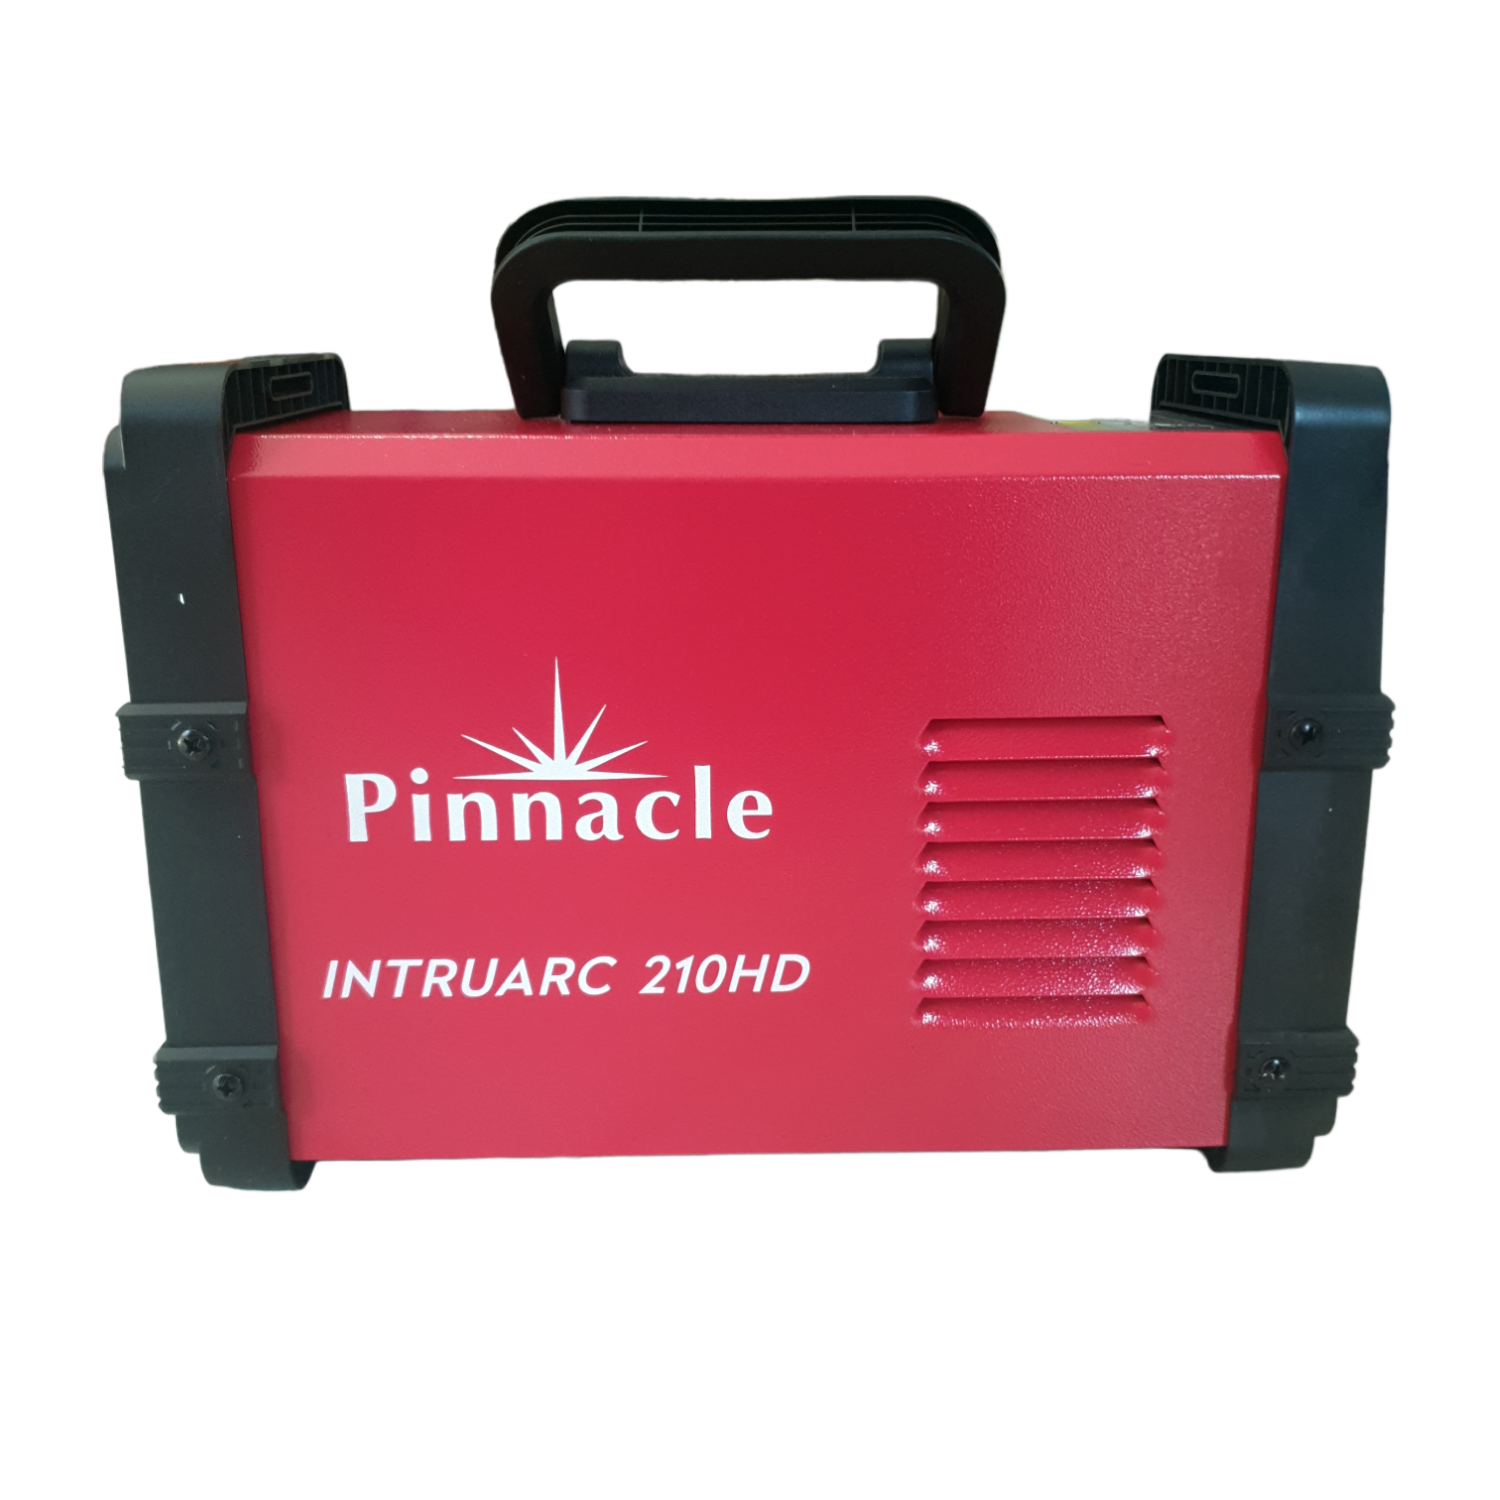 Pinnacle IntruARC 210HD Welding Machine - 200 Amp Heavy Duty Welder